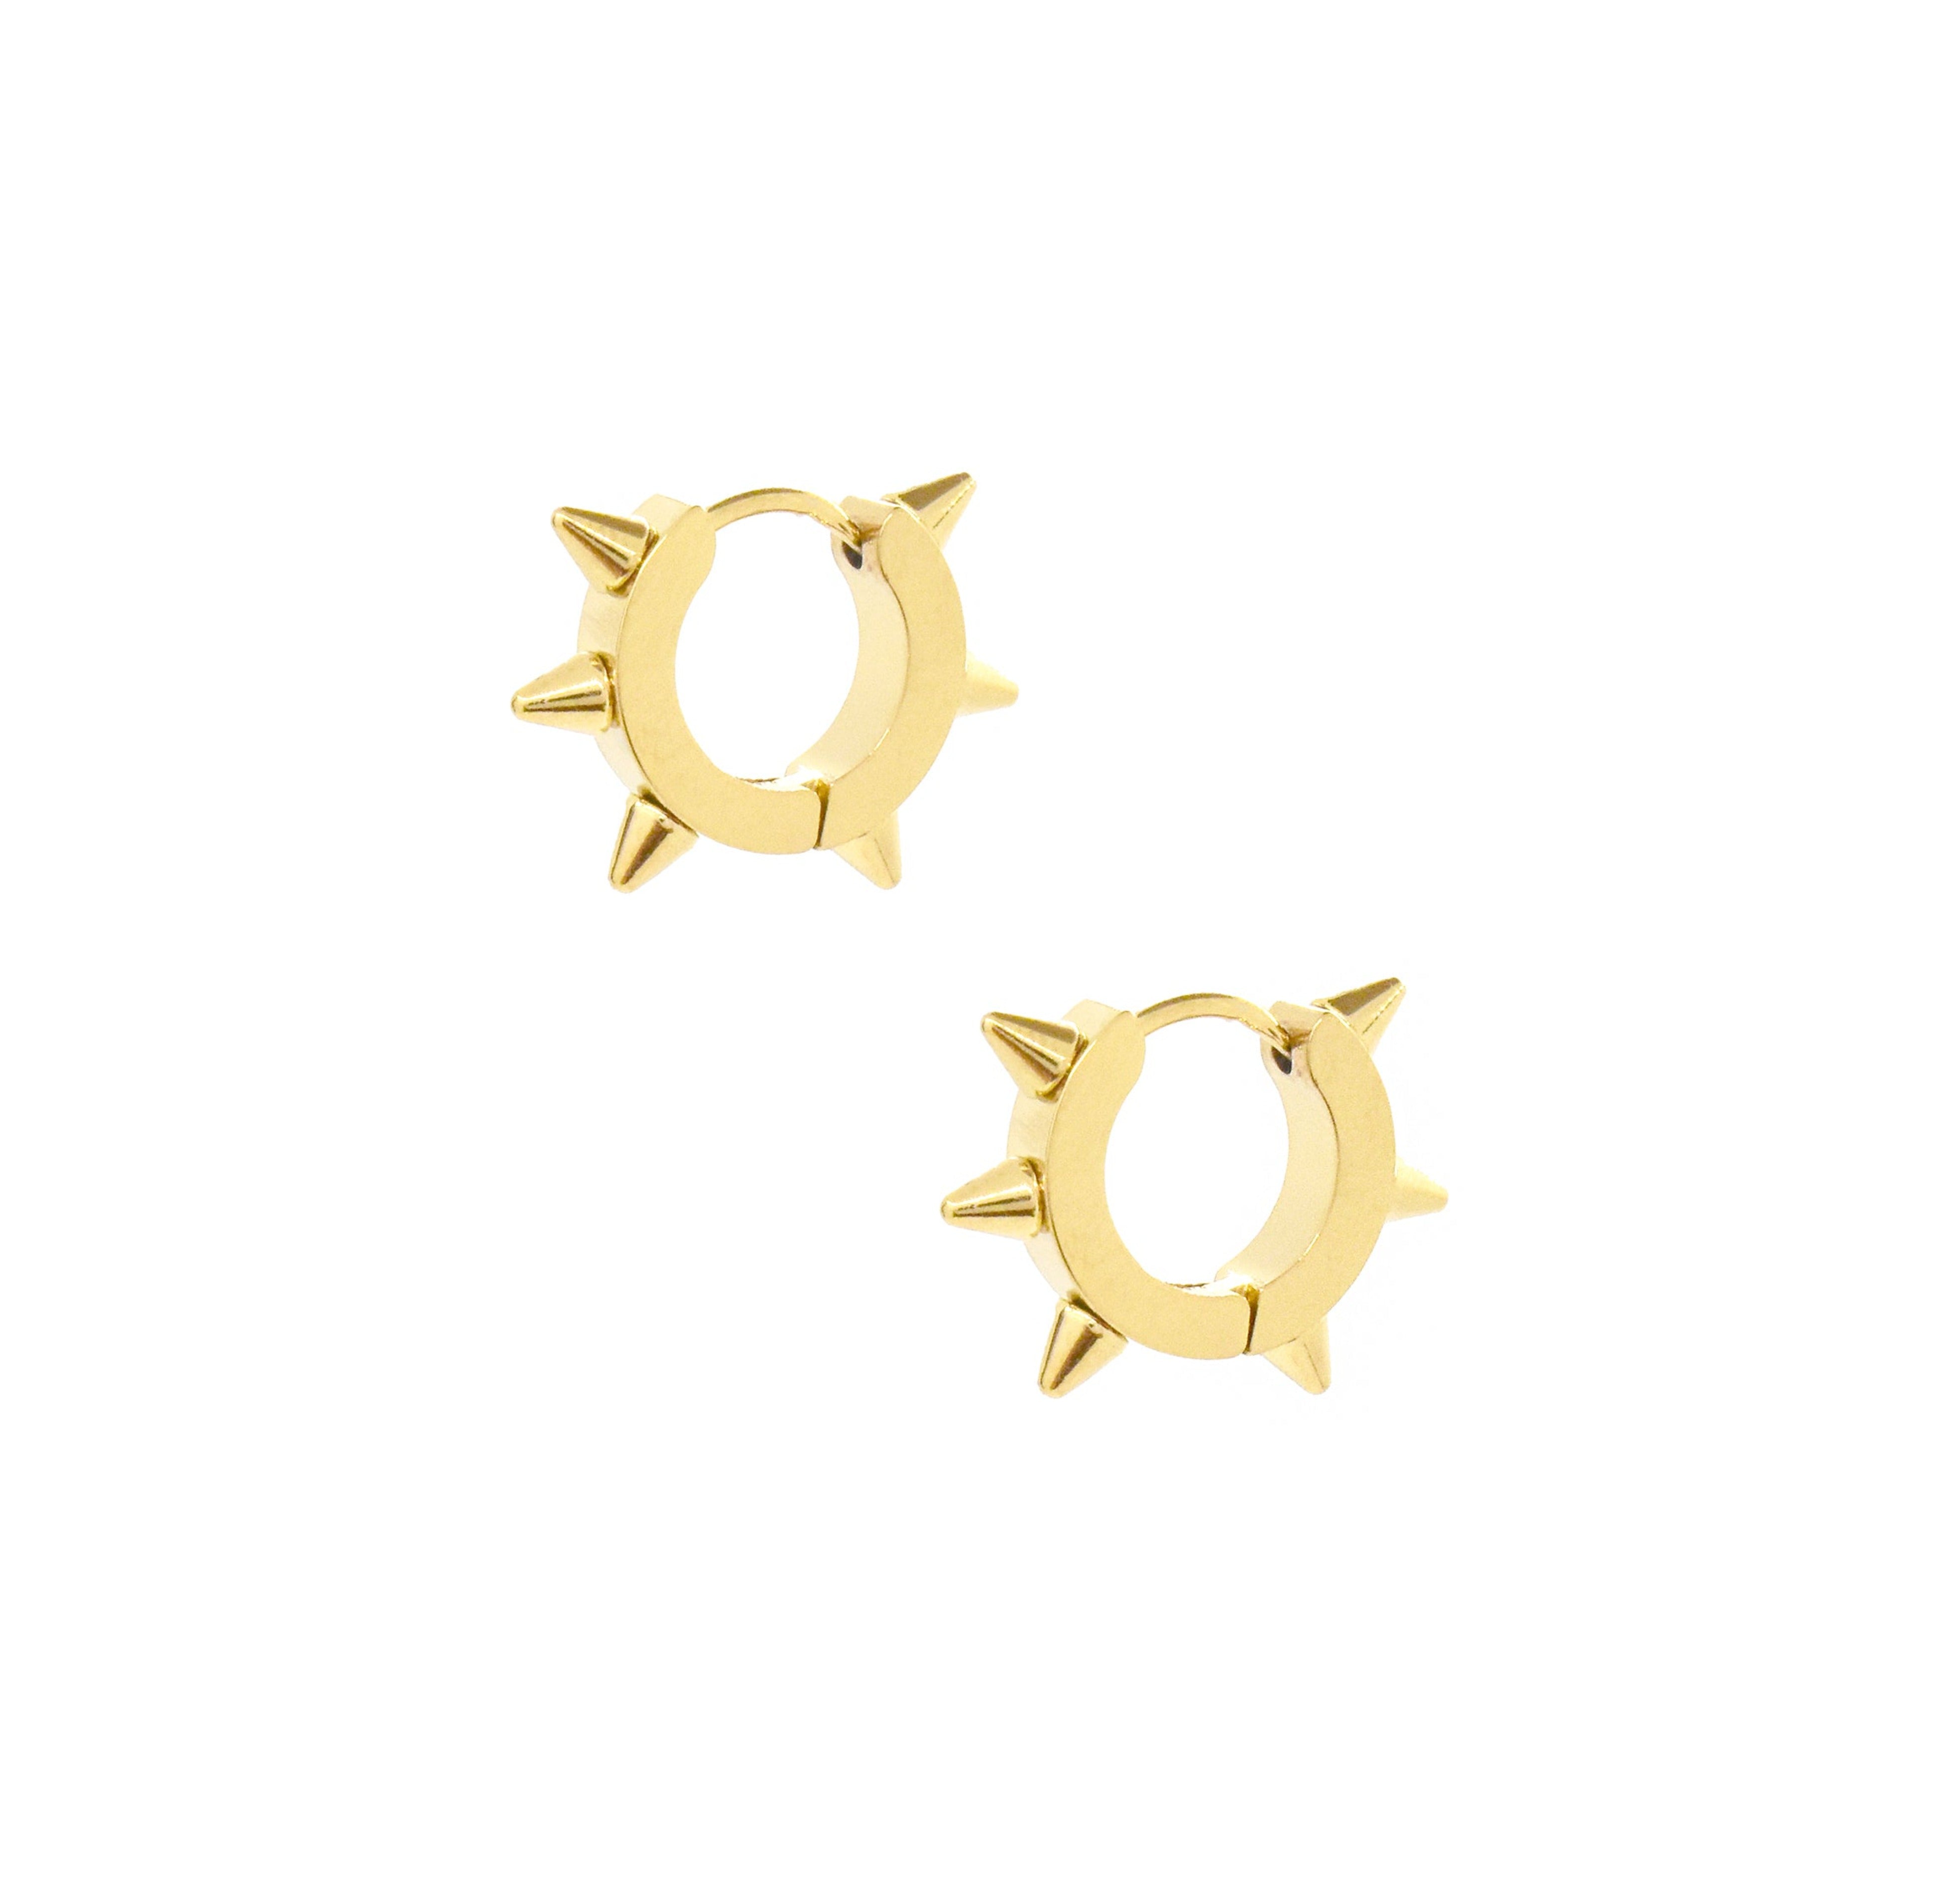 gold spike earrings waterproof jewelry